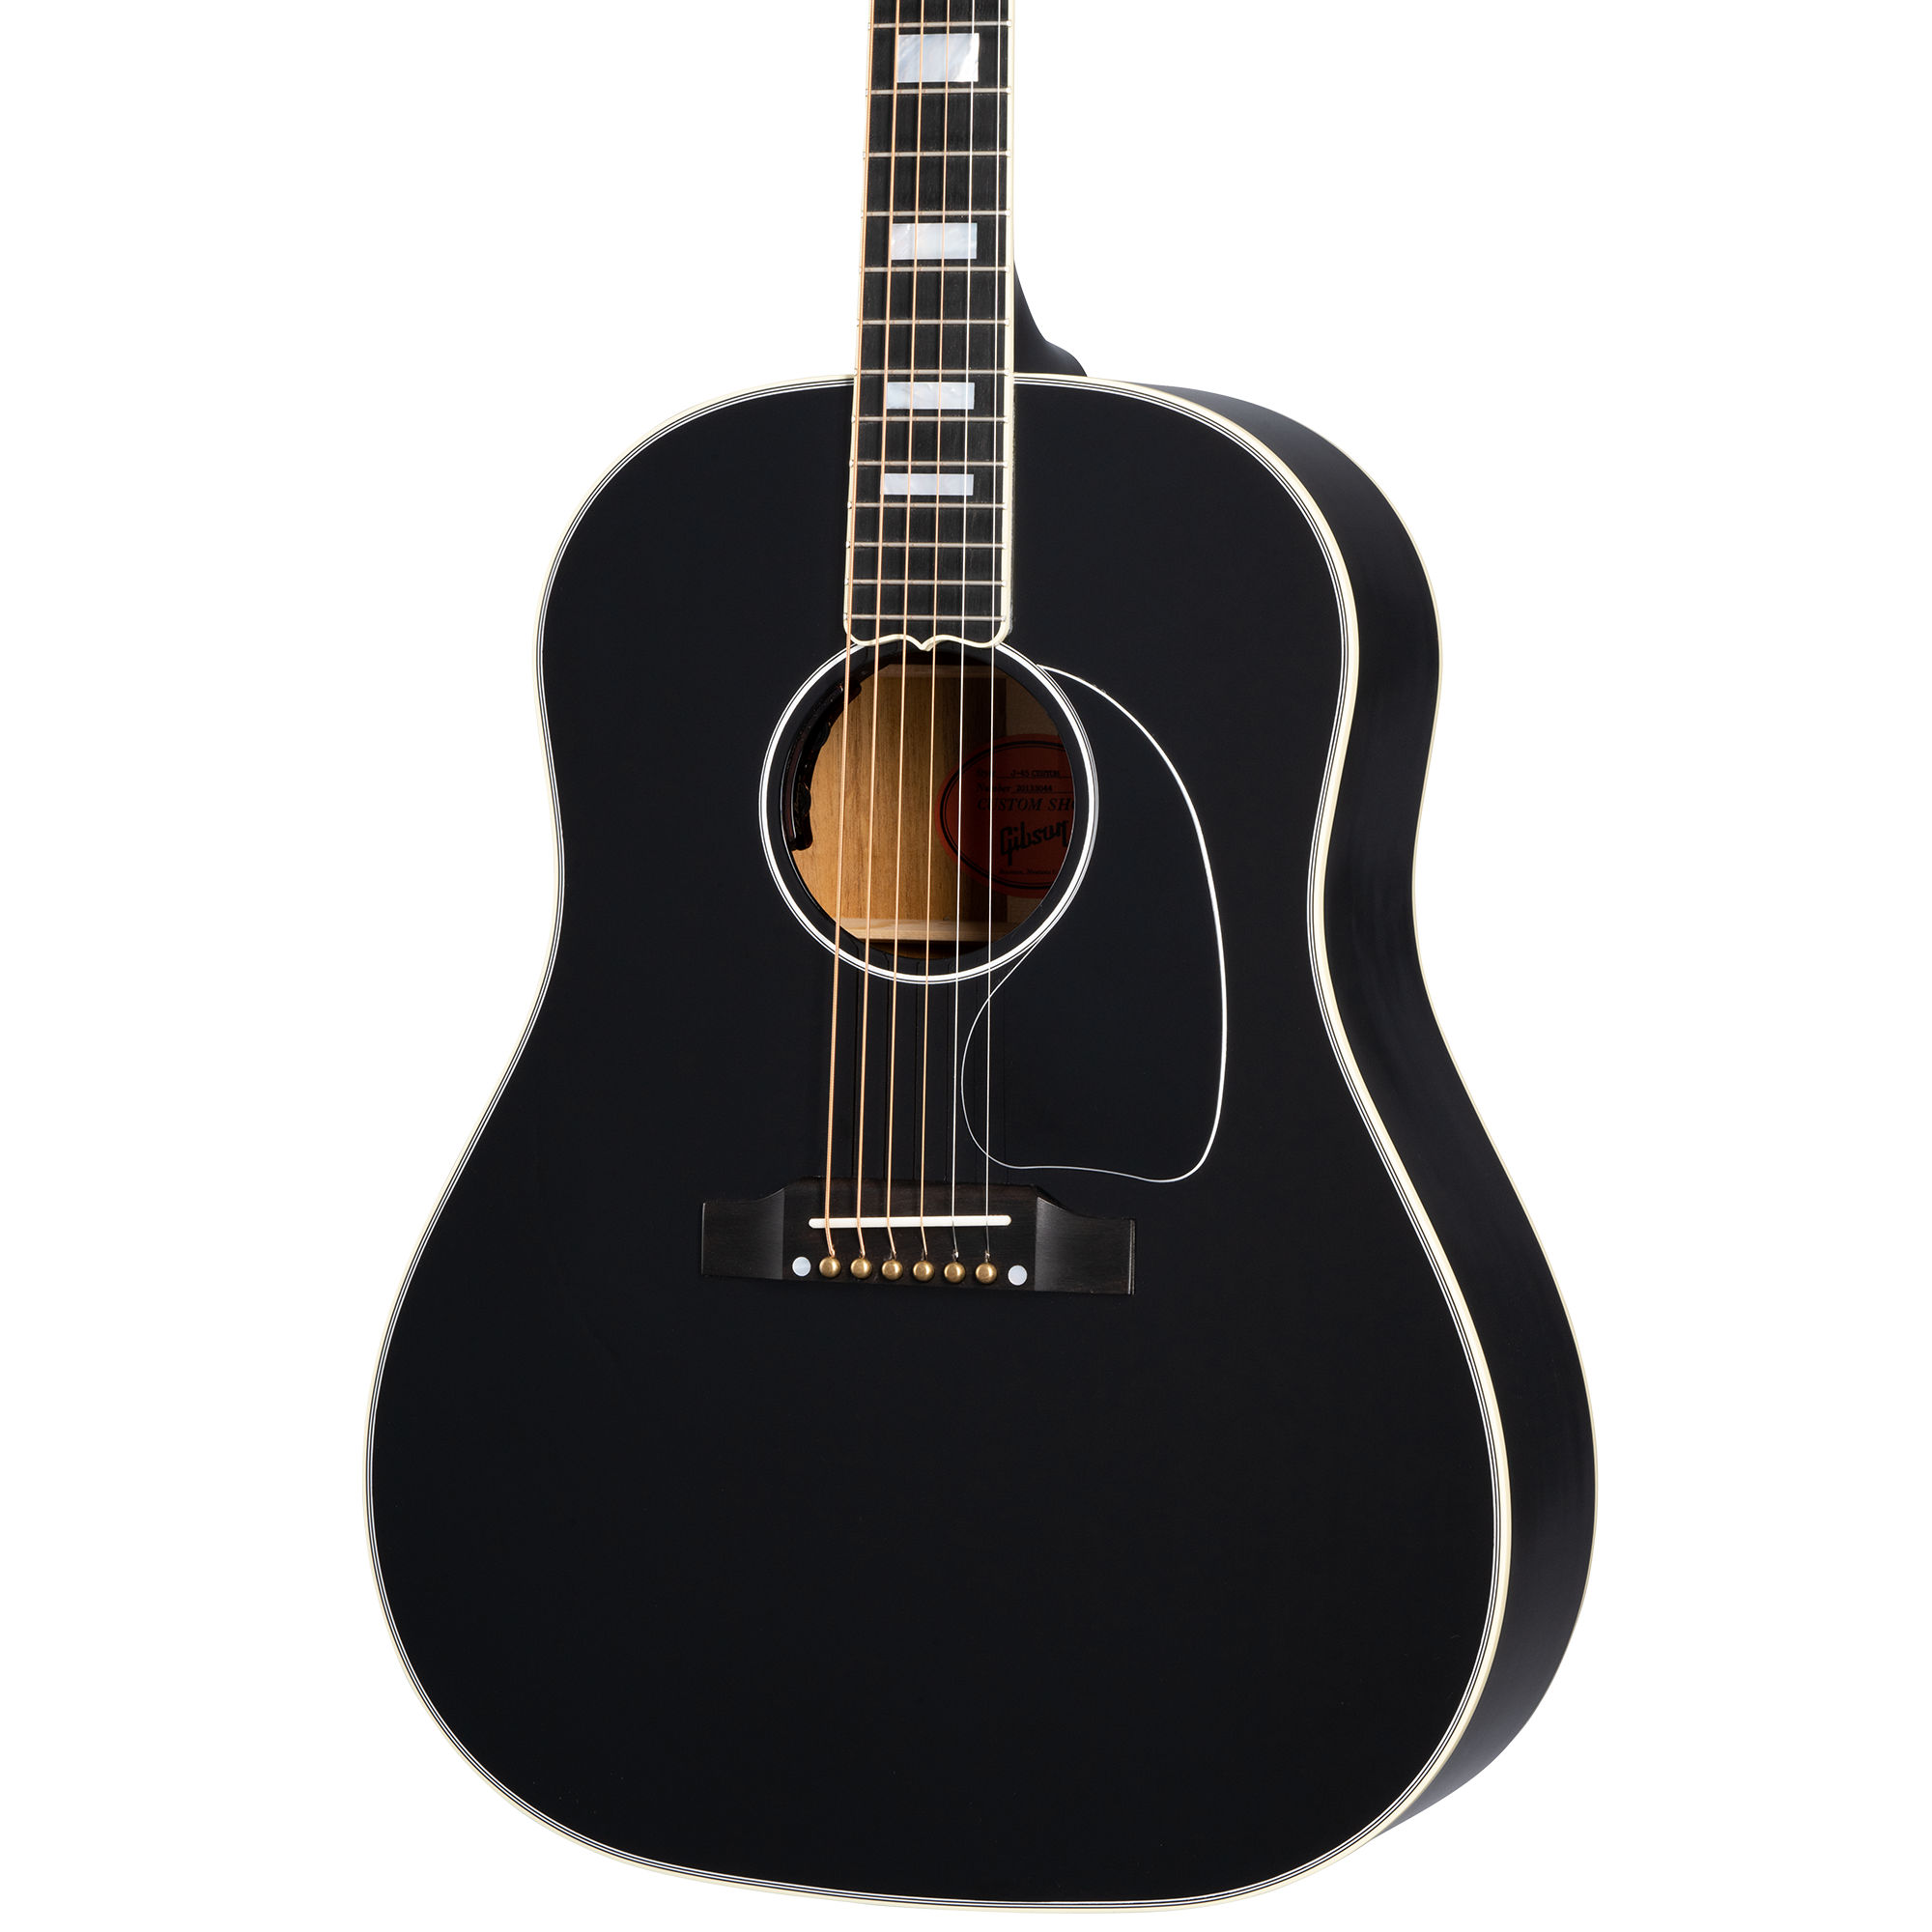 Gibson 091s☆Gibson Custom Shop ギブソンカスタムショップ J-45 ADJ エボニー アコギ アコースティックギター ※